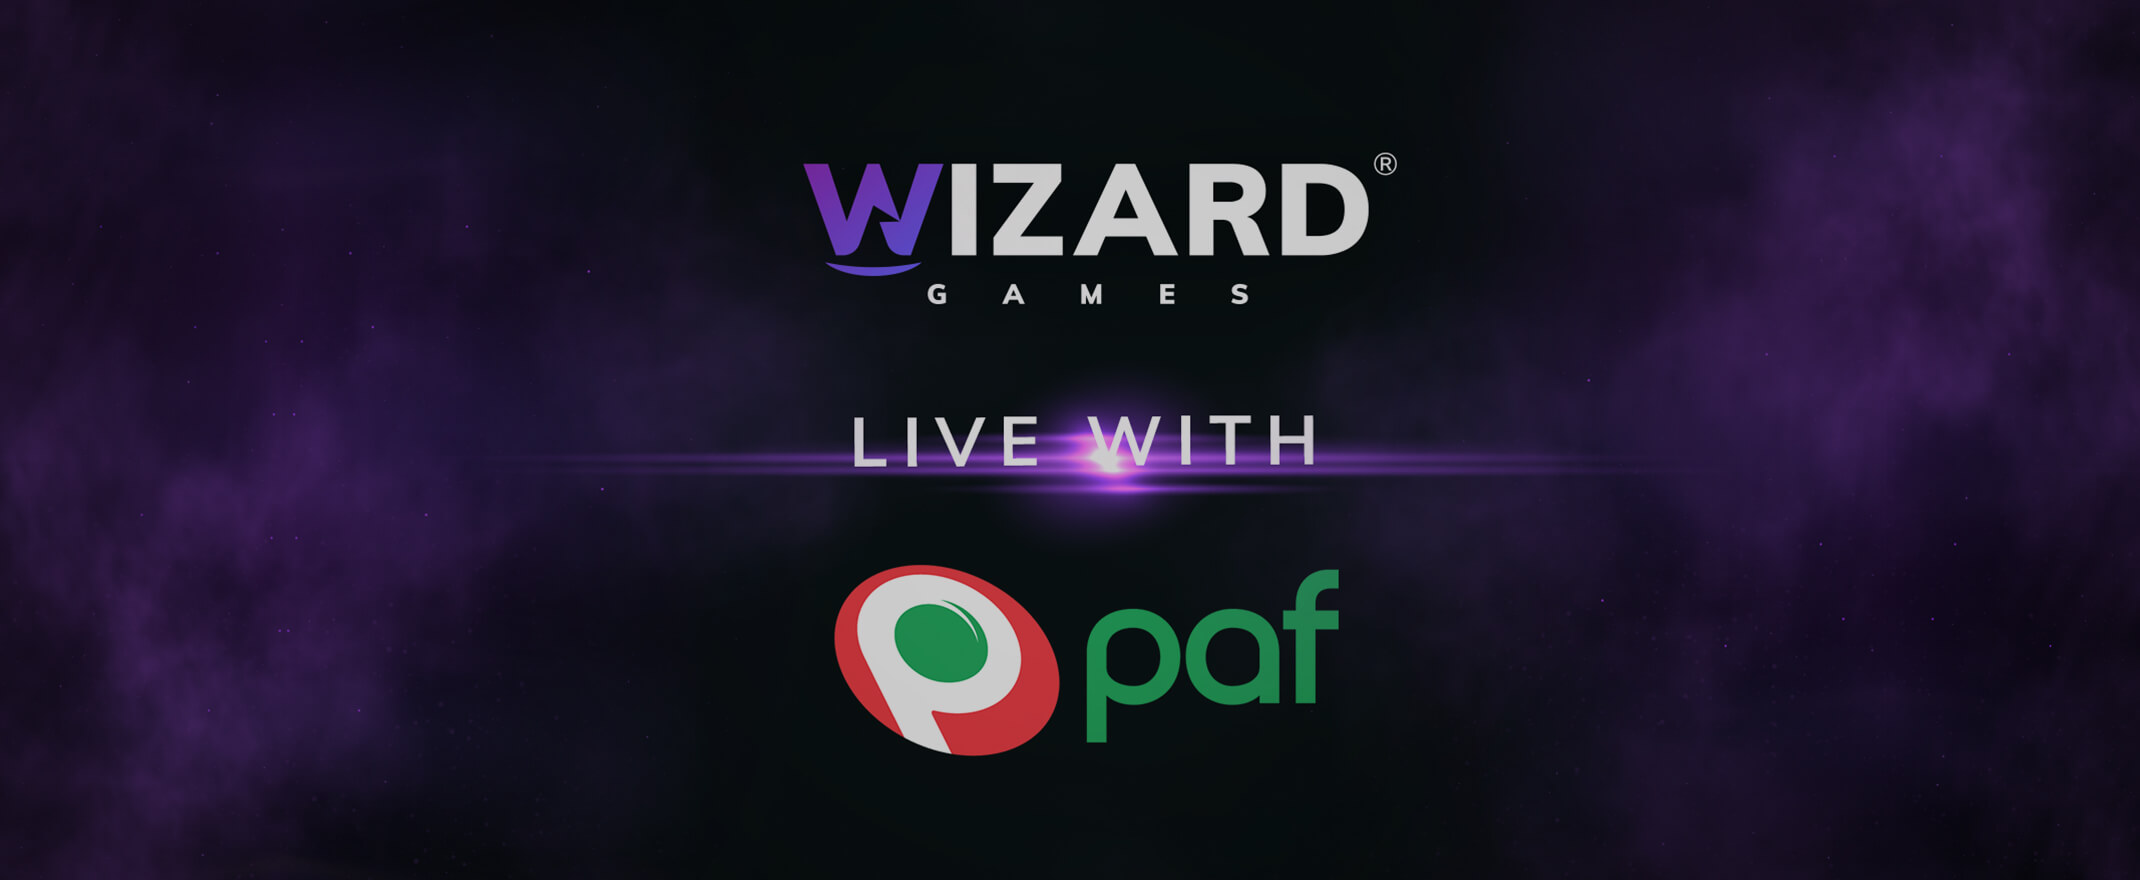 Wizard Games spelportfölj nu tillgänglig hos Paf